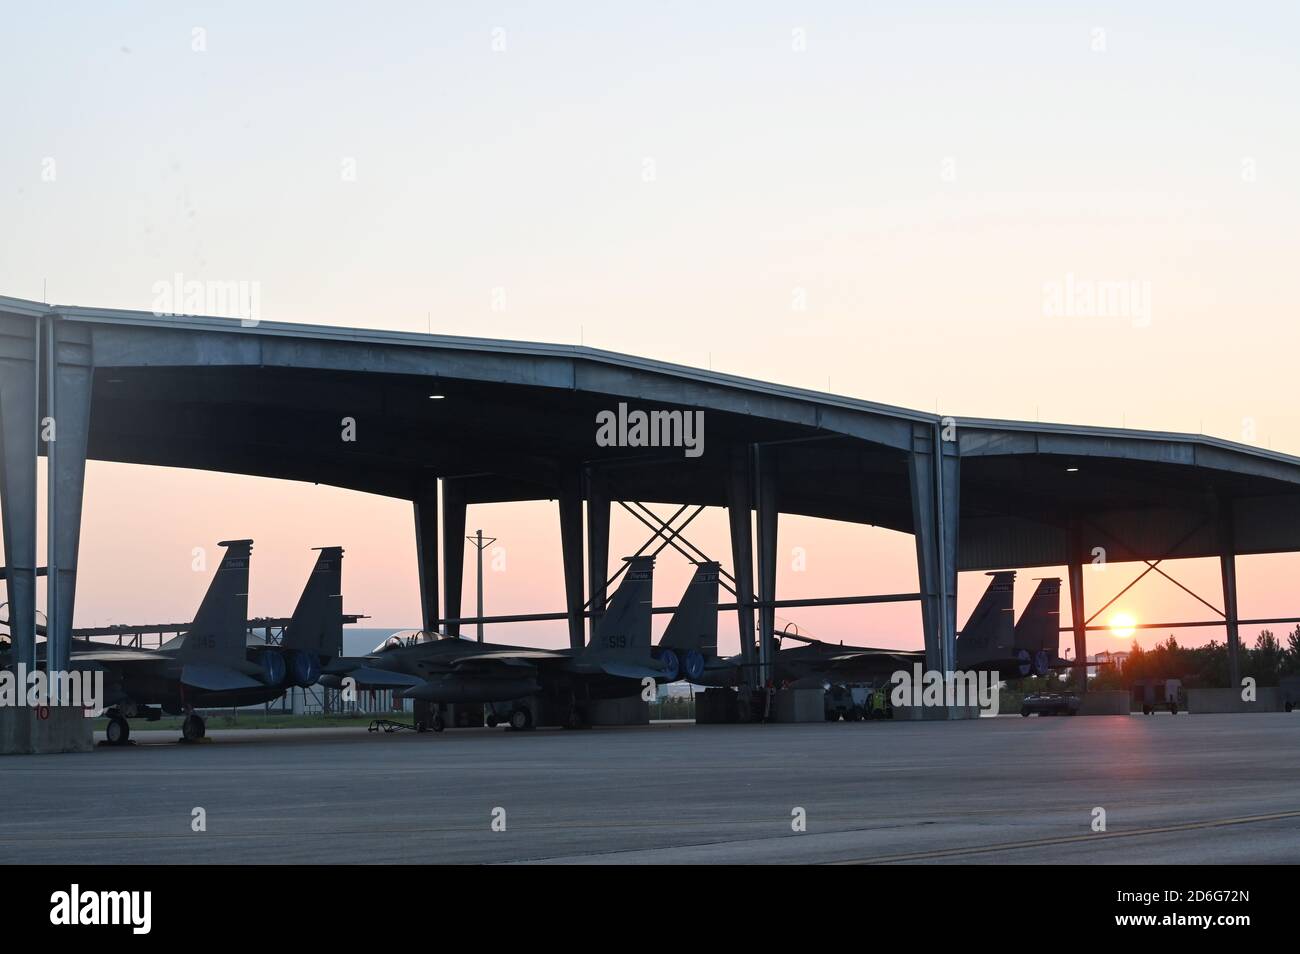 Gli aerei US Air Force F-15 sono raffigurati sulla linea di volo durante un alba mattutina presso la 125th Fighter Wing, situata alla Jacksonville Air National Guard base, FL, 14 ottobre 2020. Foto Stock